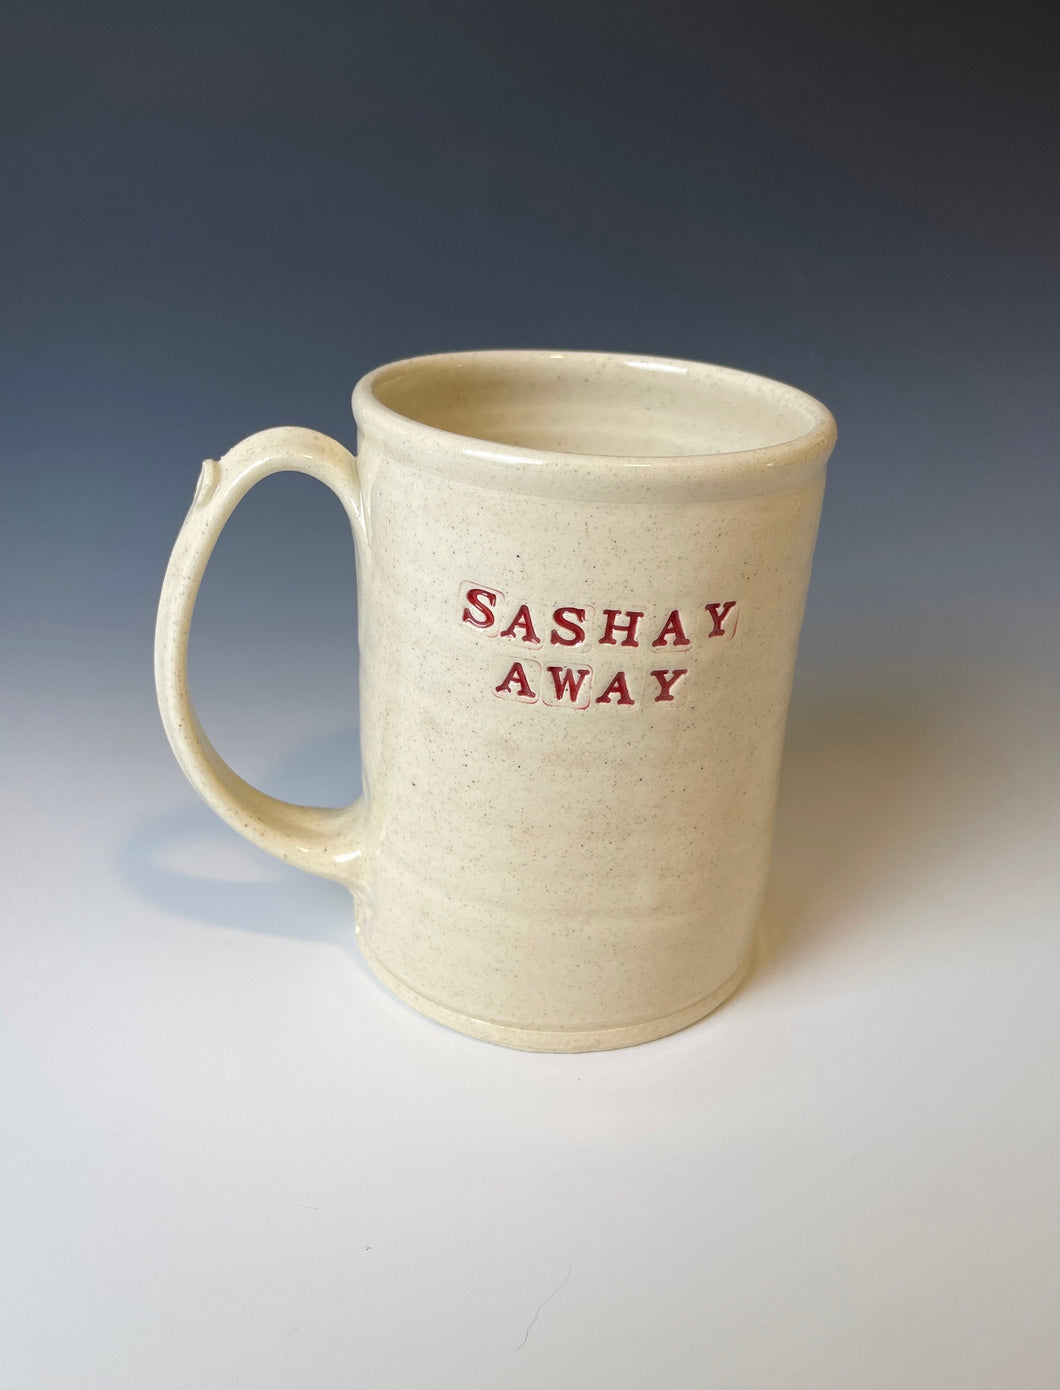 16oz Sashay away mug